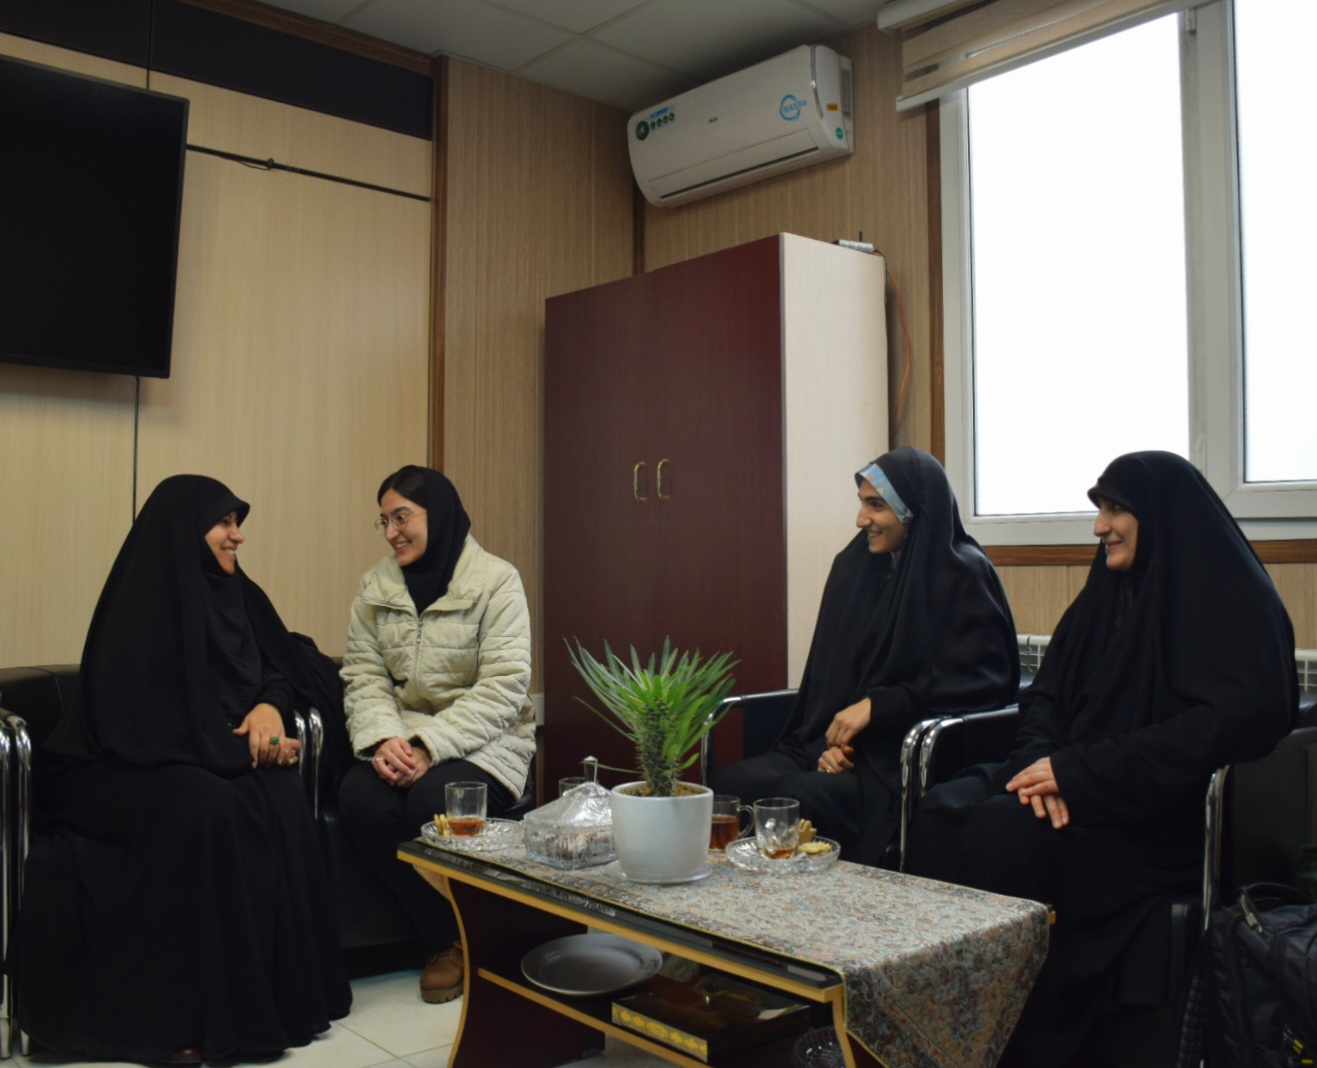 دختران البرزی در رویداد سلما به میزبانی استان کرمان حضور یافتند